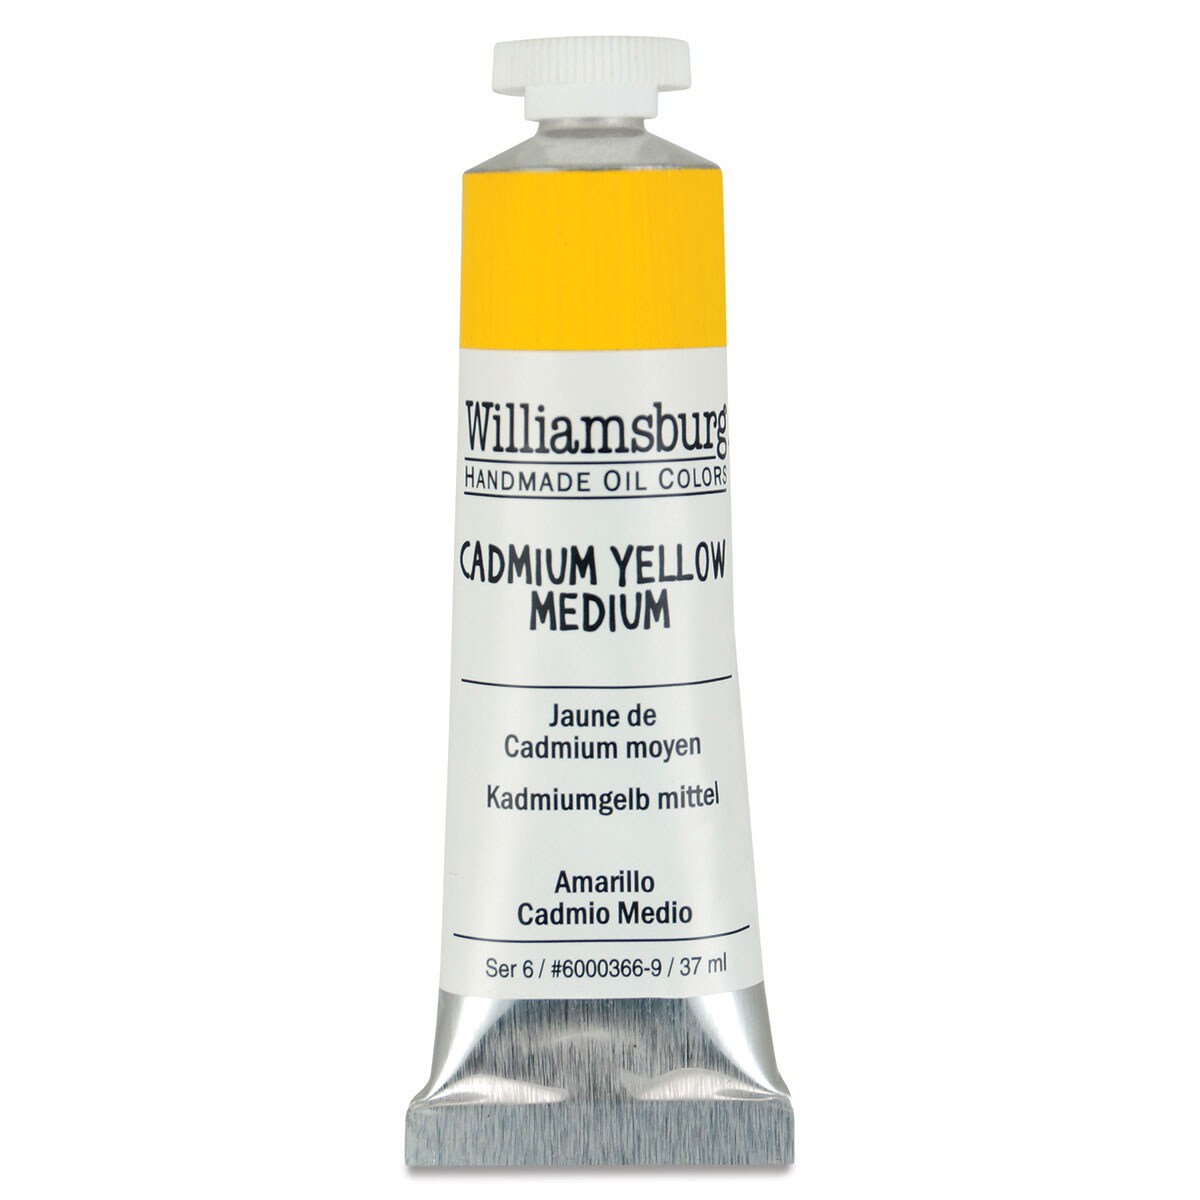 Williamsburg Handmade Oil Paint - Cadmium Yellow Medium, 37 ml tube